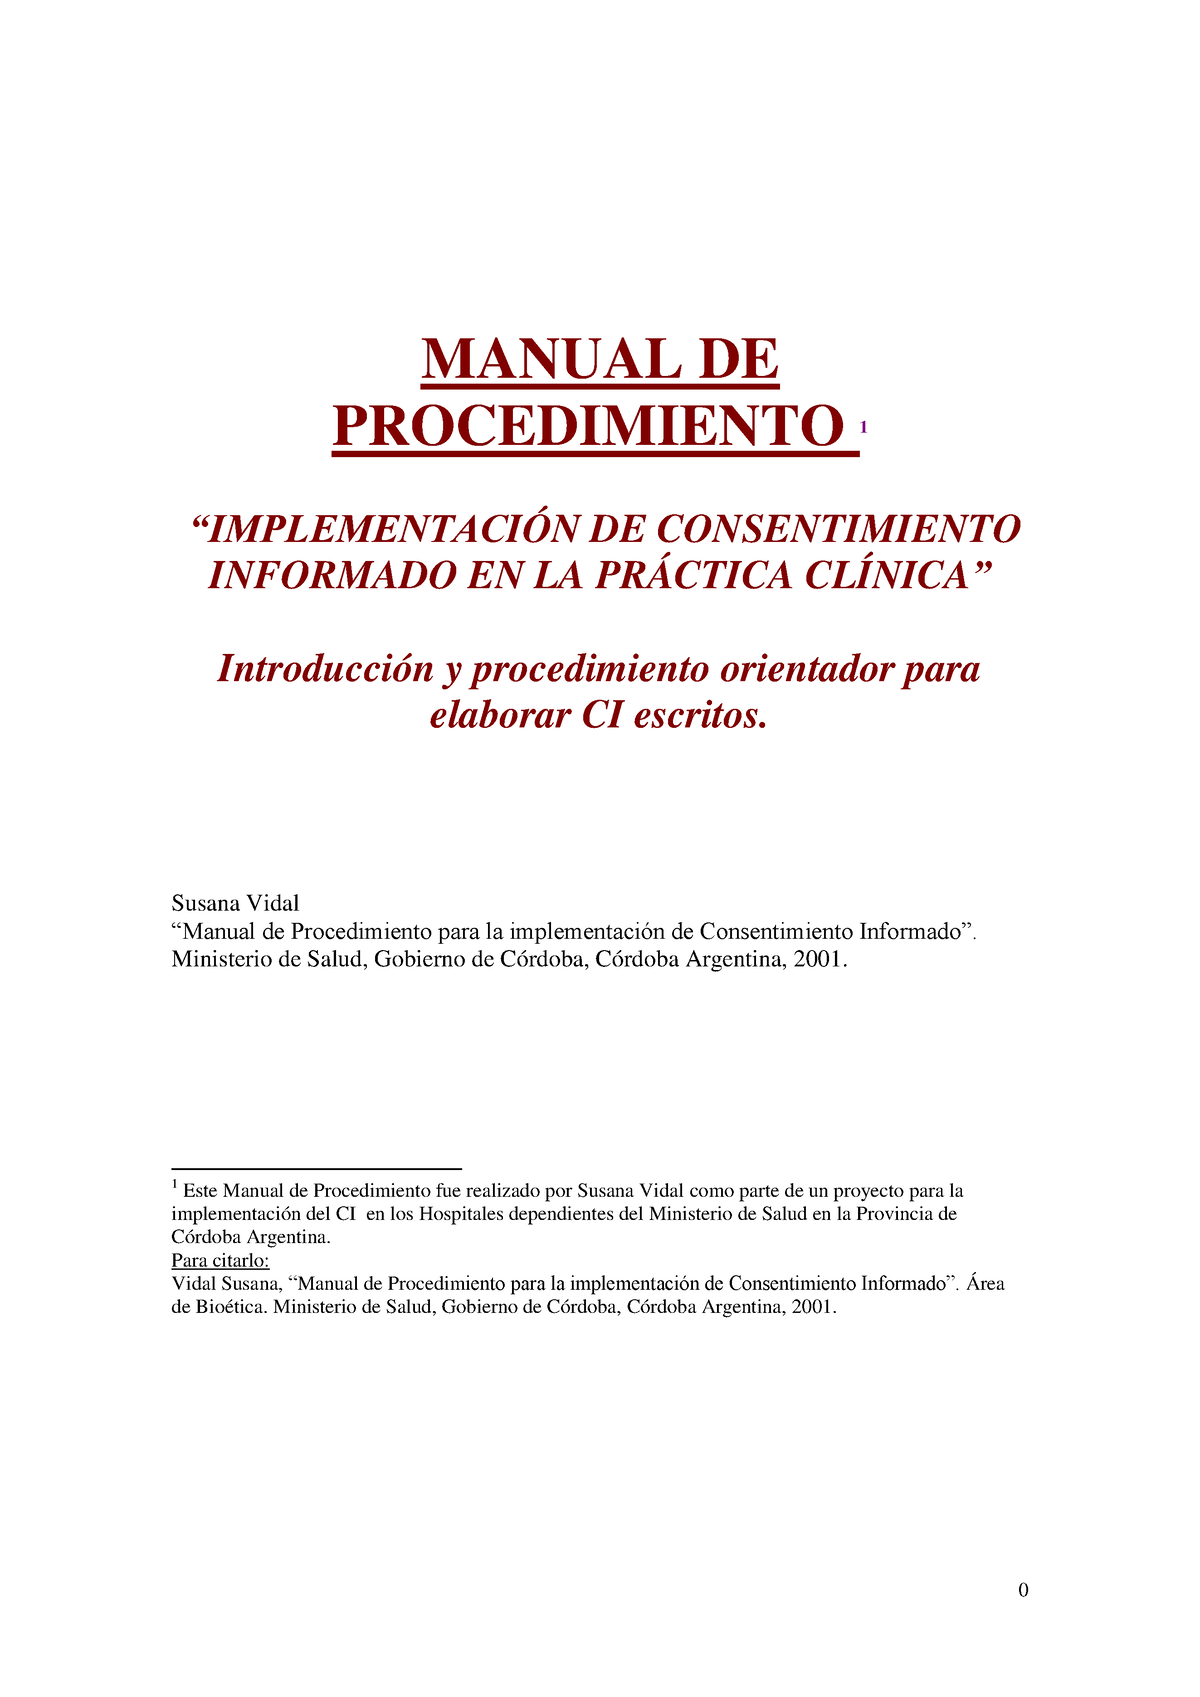 02 Implementacion De Consentimiento Informado En La Practica Clinica Manual De Procedimiento 1 2580